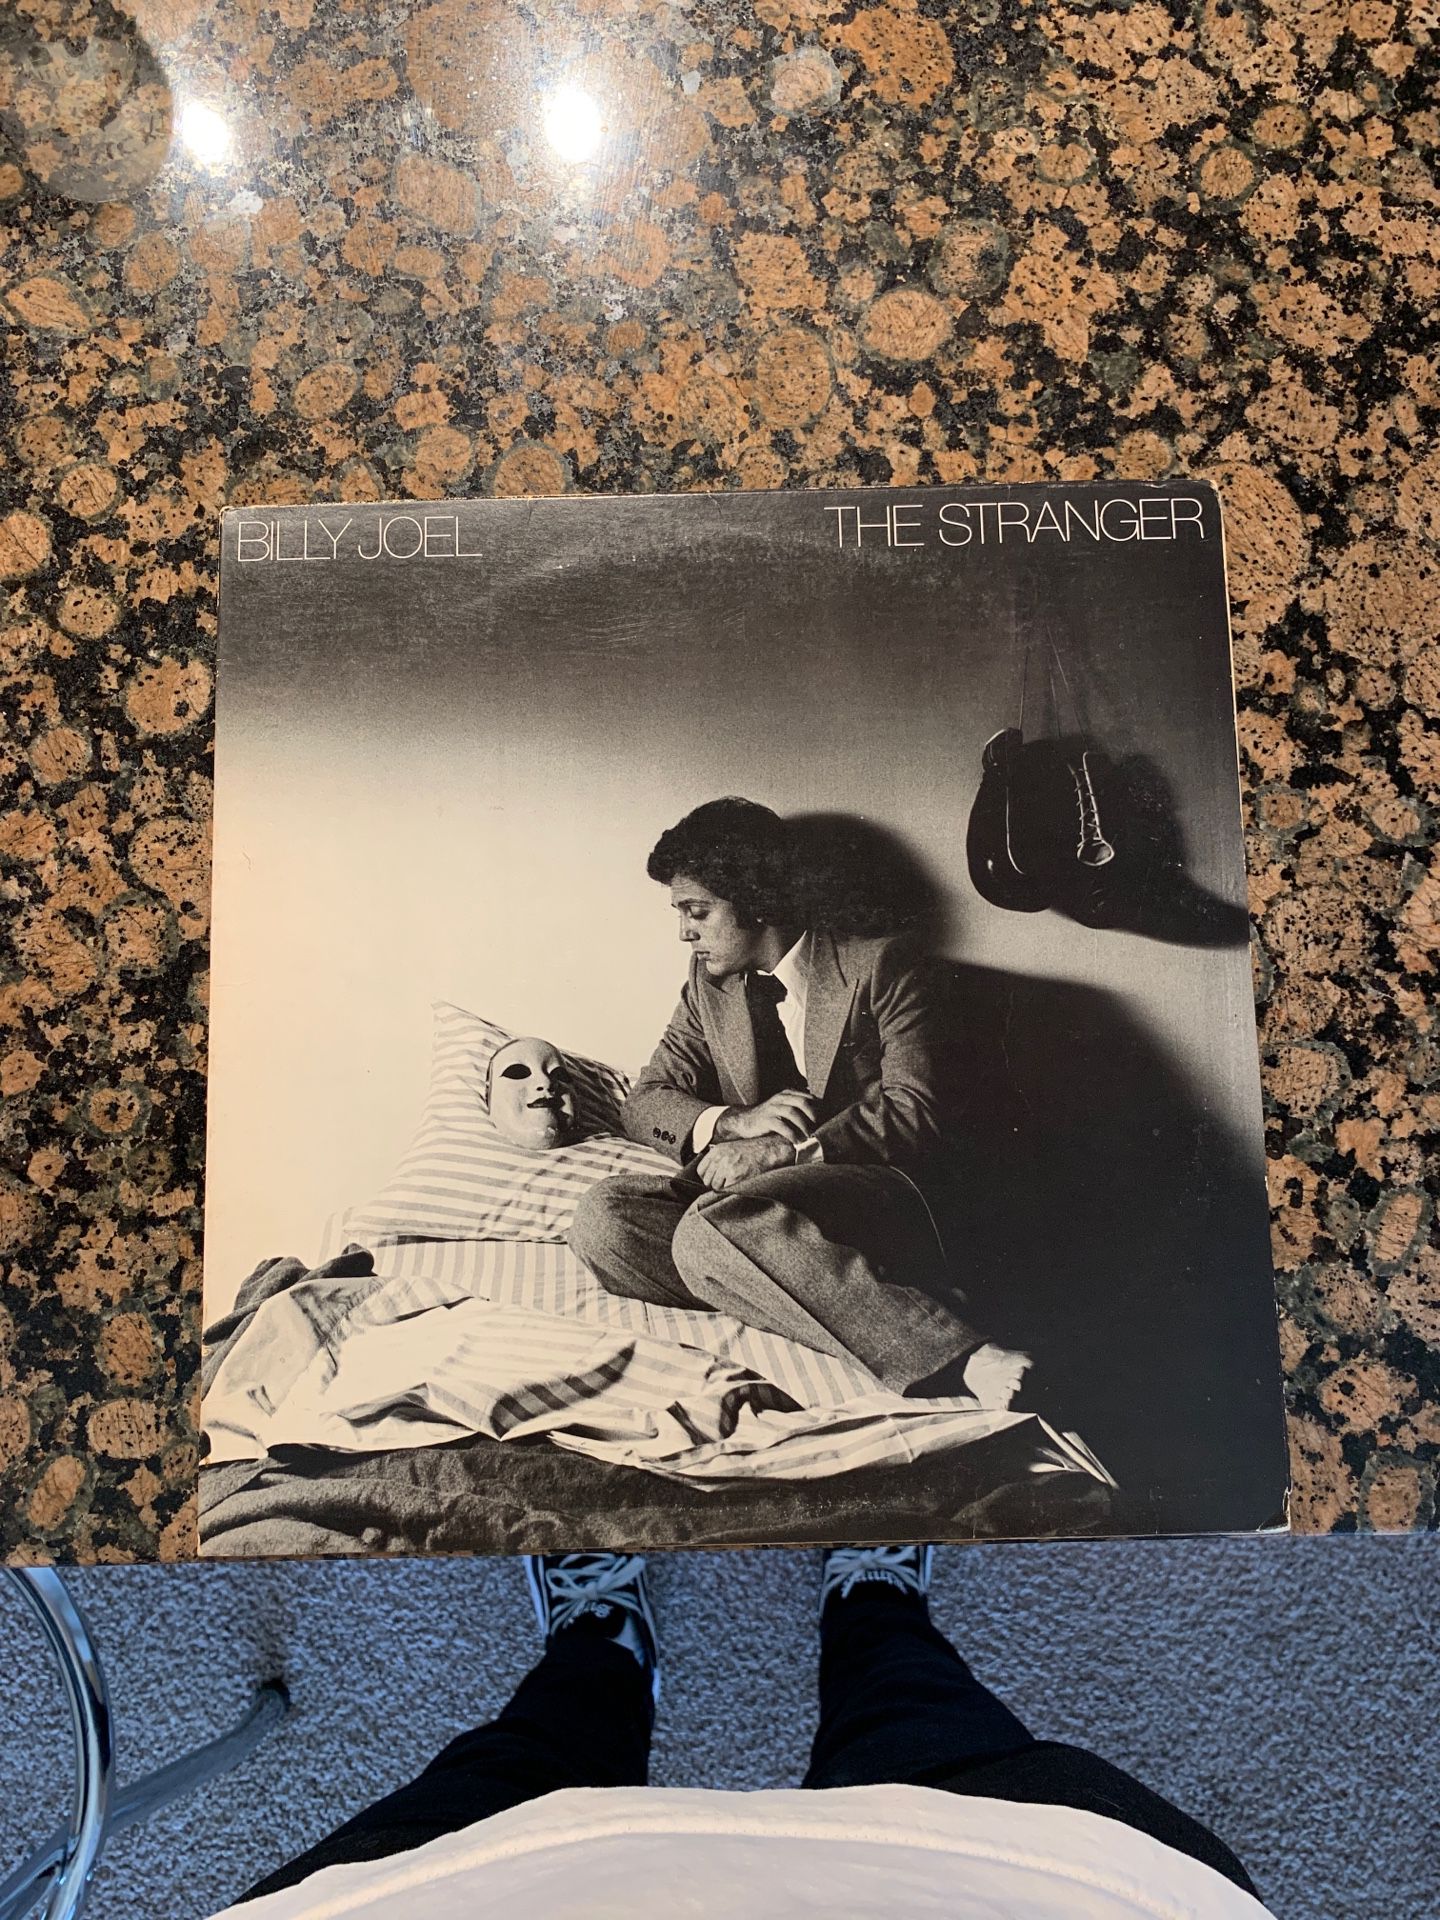 Billy Joel the stranger 1977 vinyl